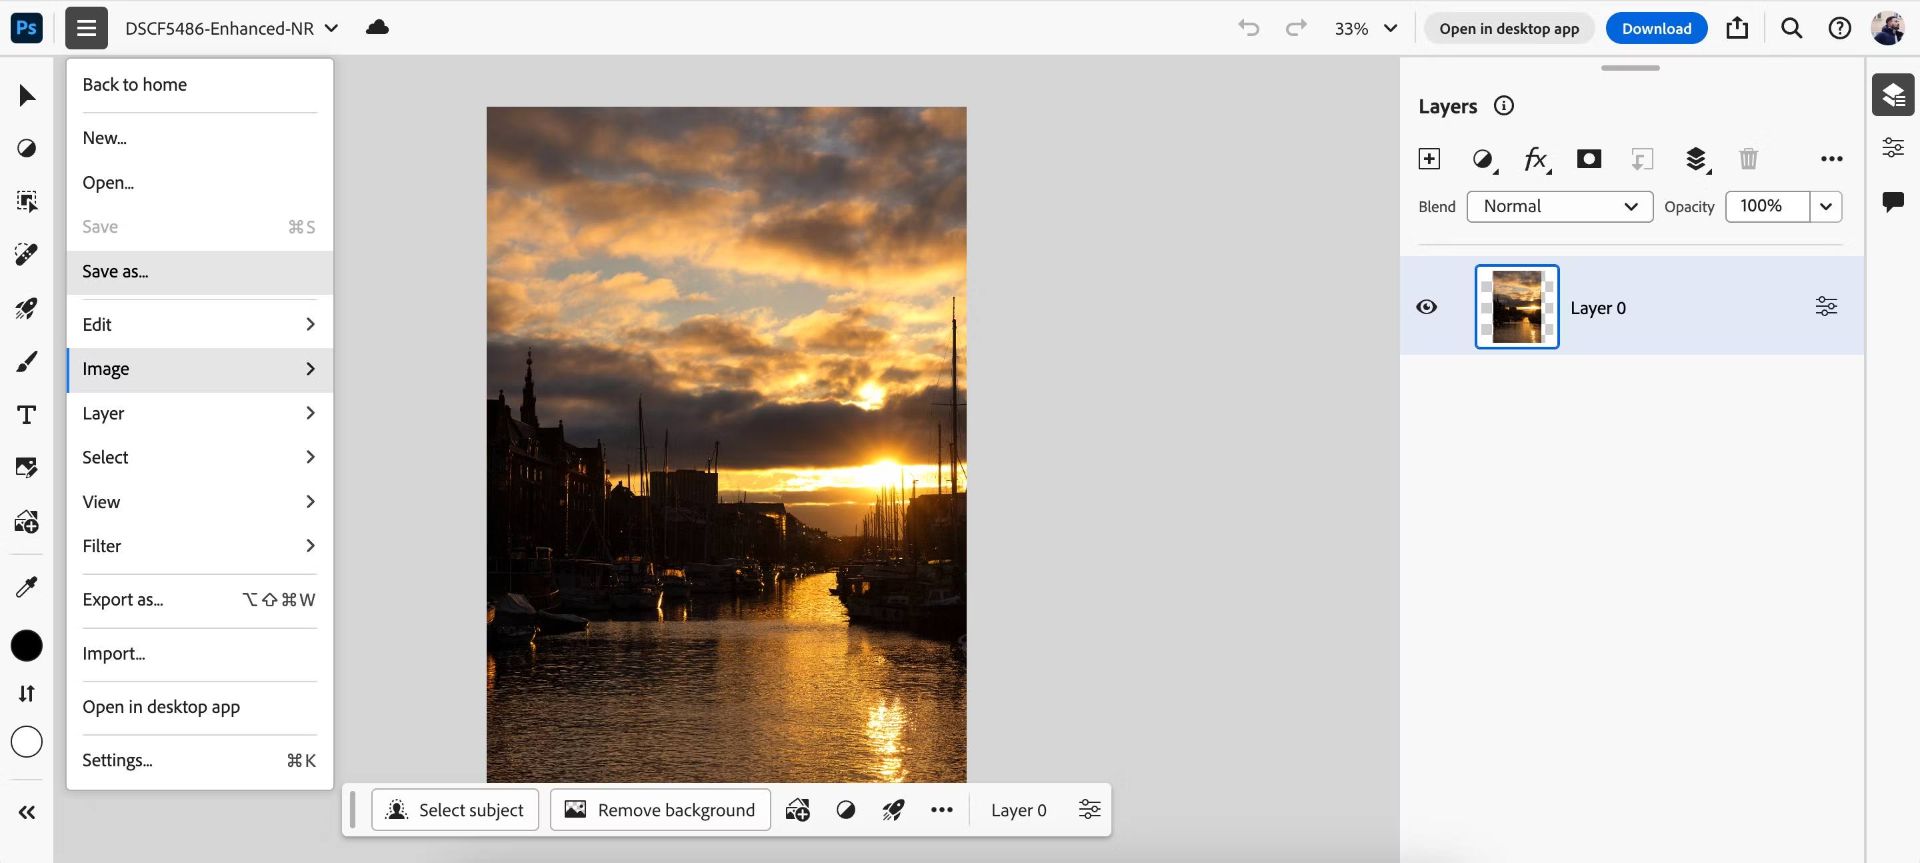 ذخیره عکس در فتوشاپ ازطریق اپلیکیشن Creative Cloud